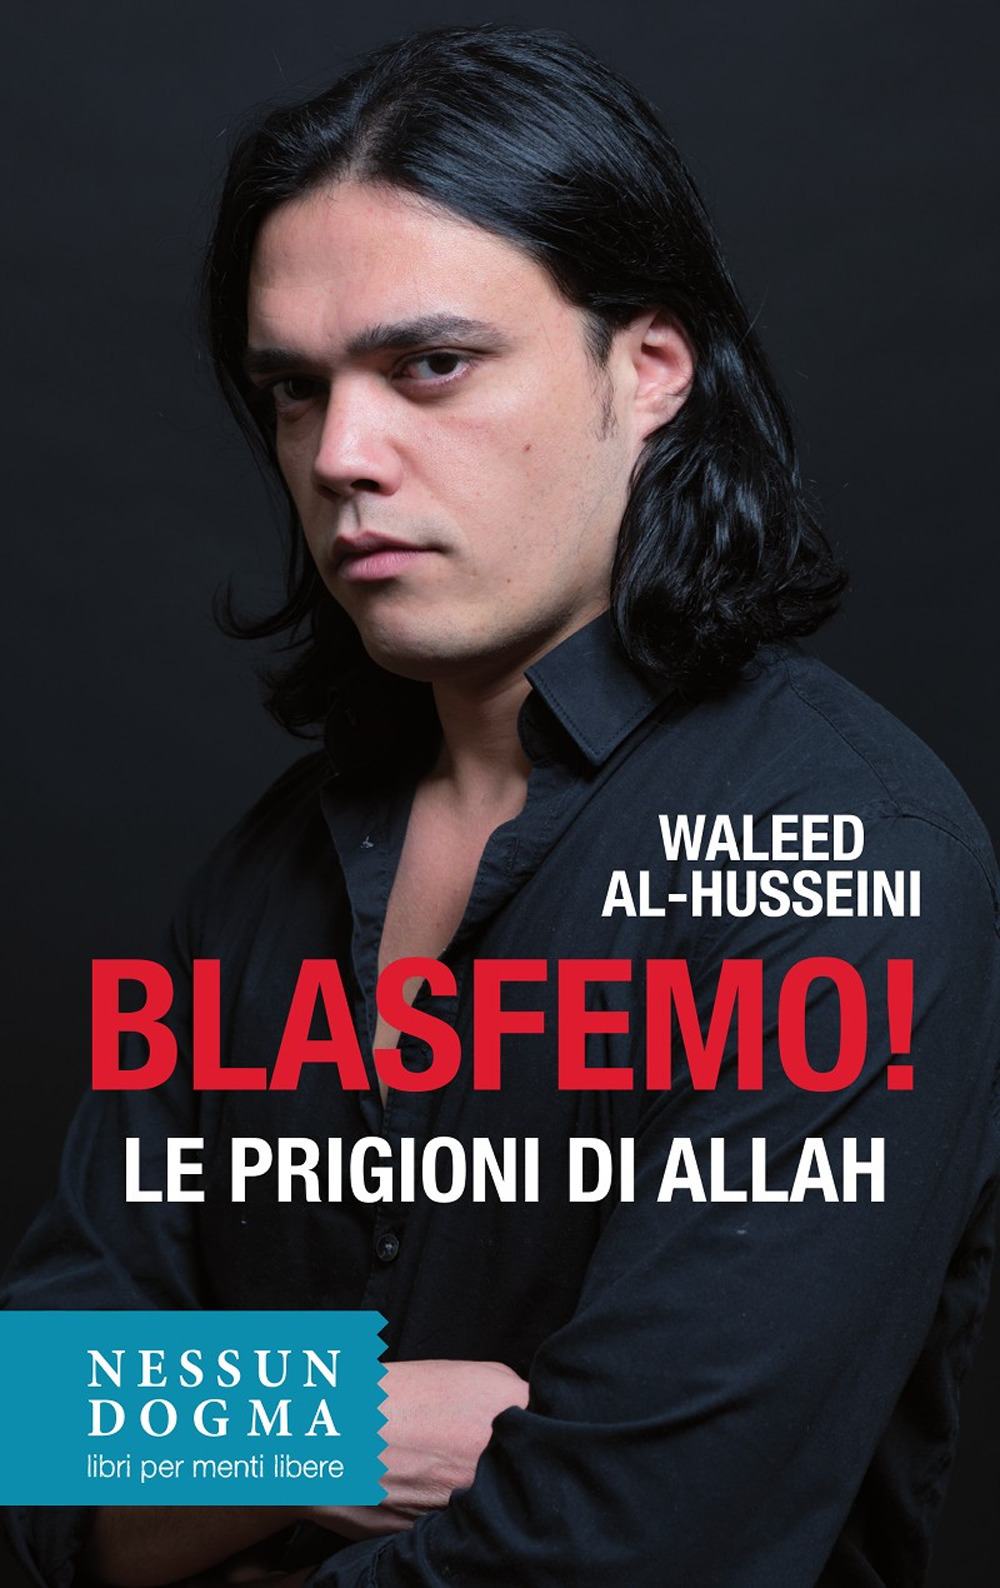 Image of Blasfemo! Le prigioni di Allah